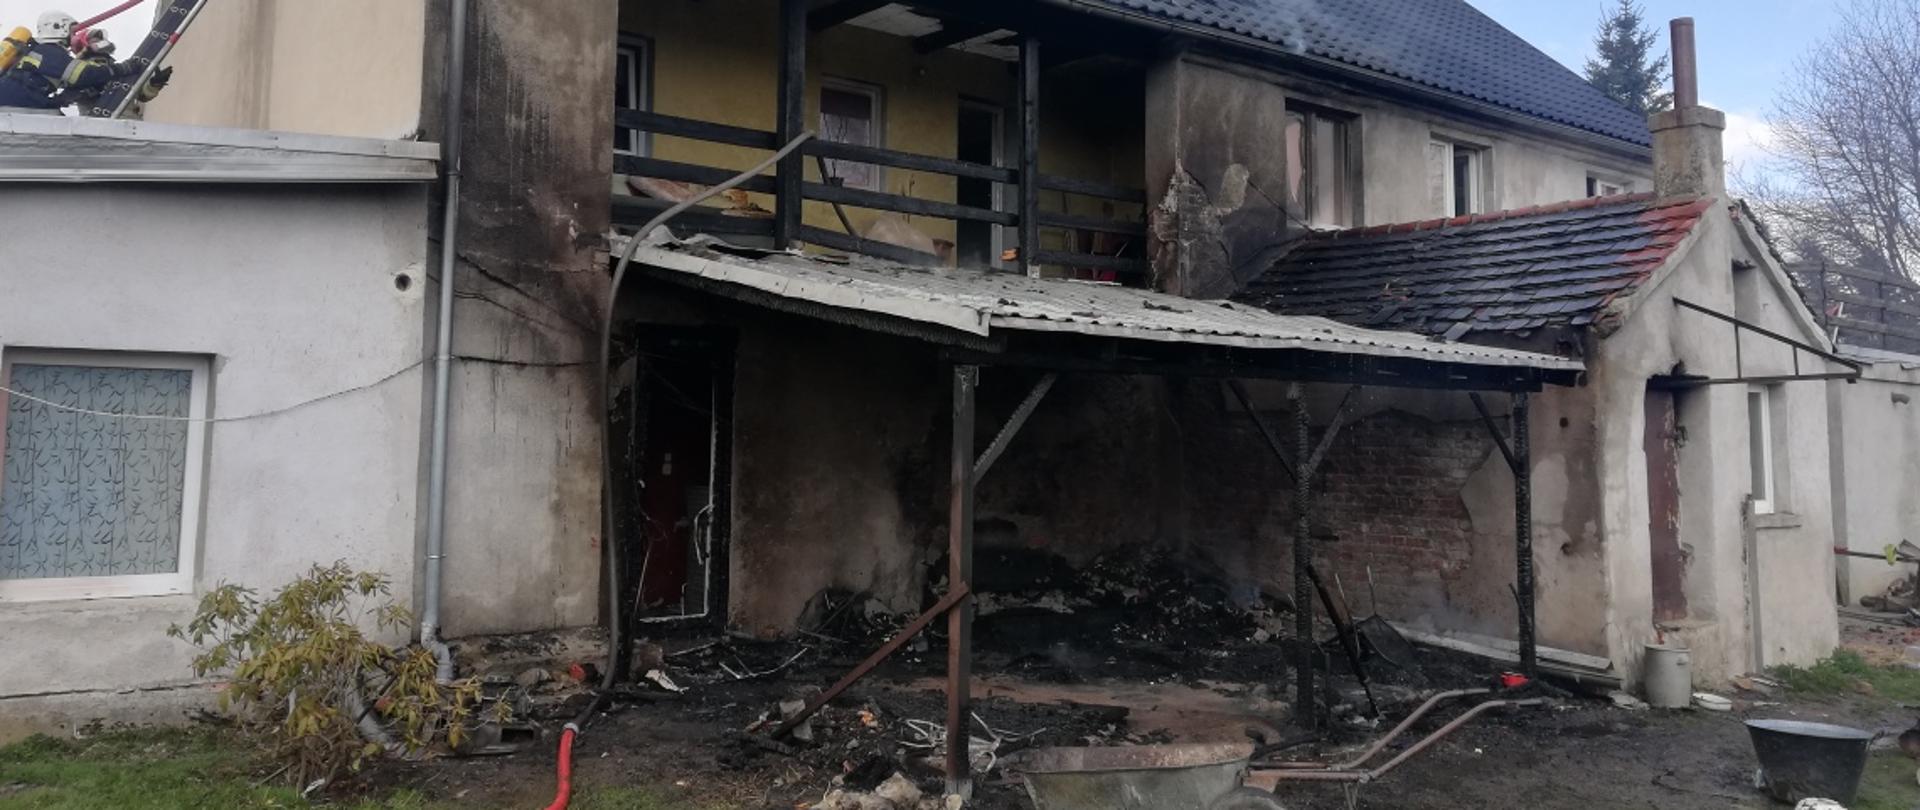 Zdjęcie przedstawia zniszczony dom po pożarze. 